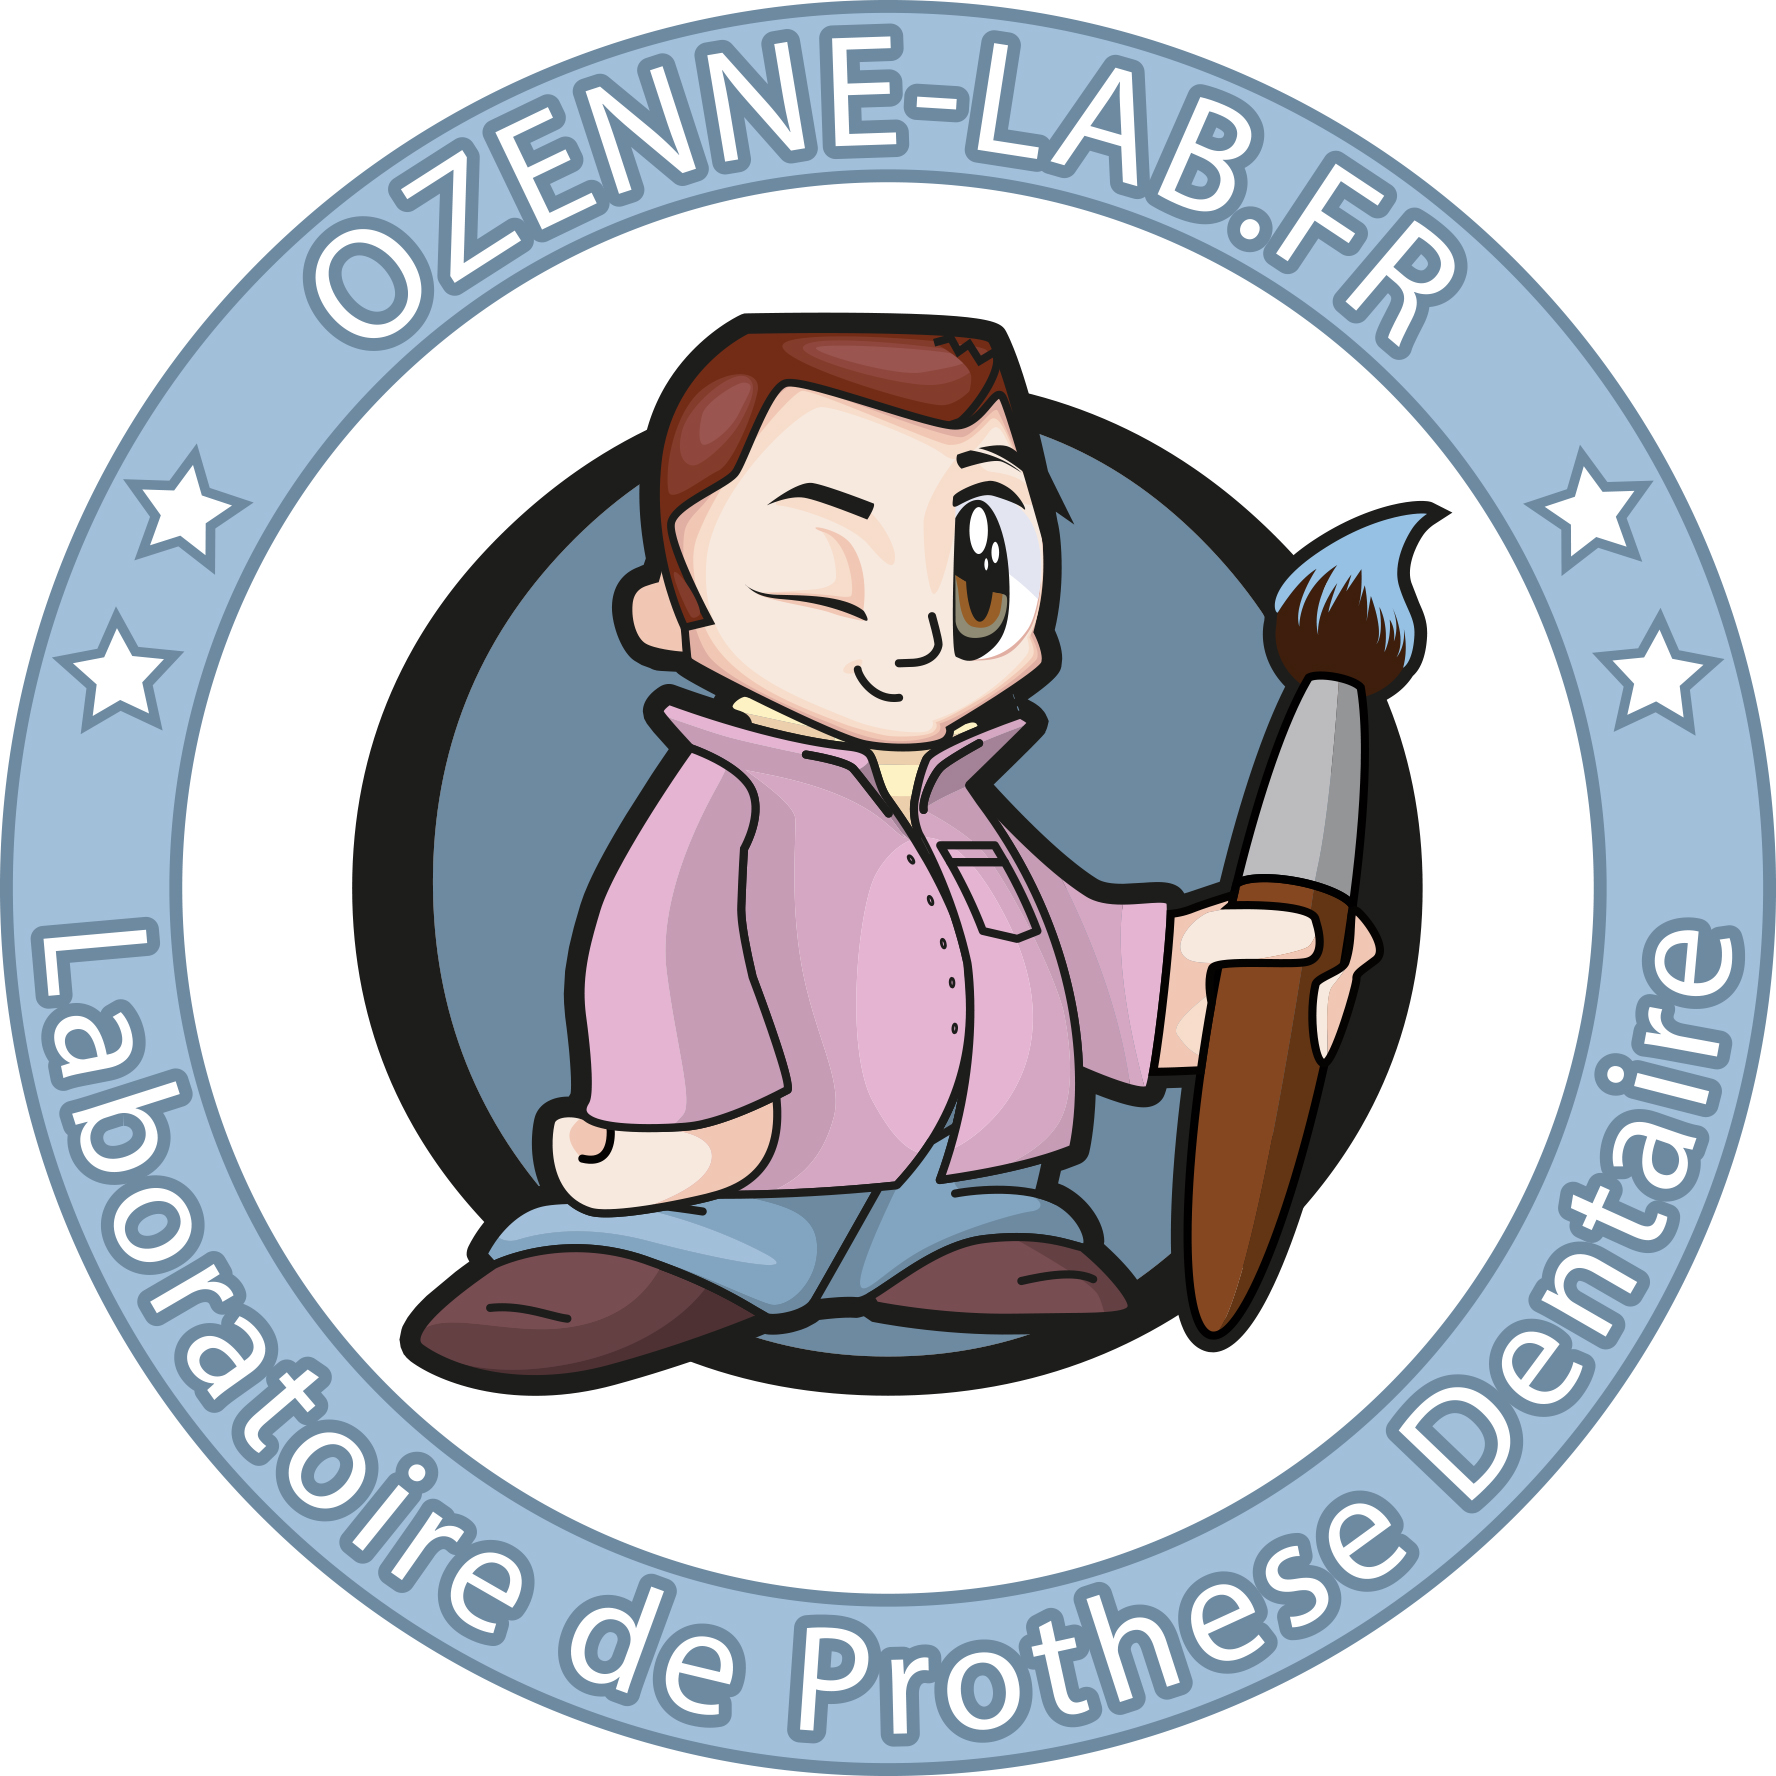 Ozenne-Lab